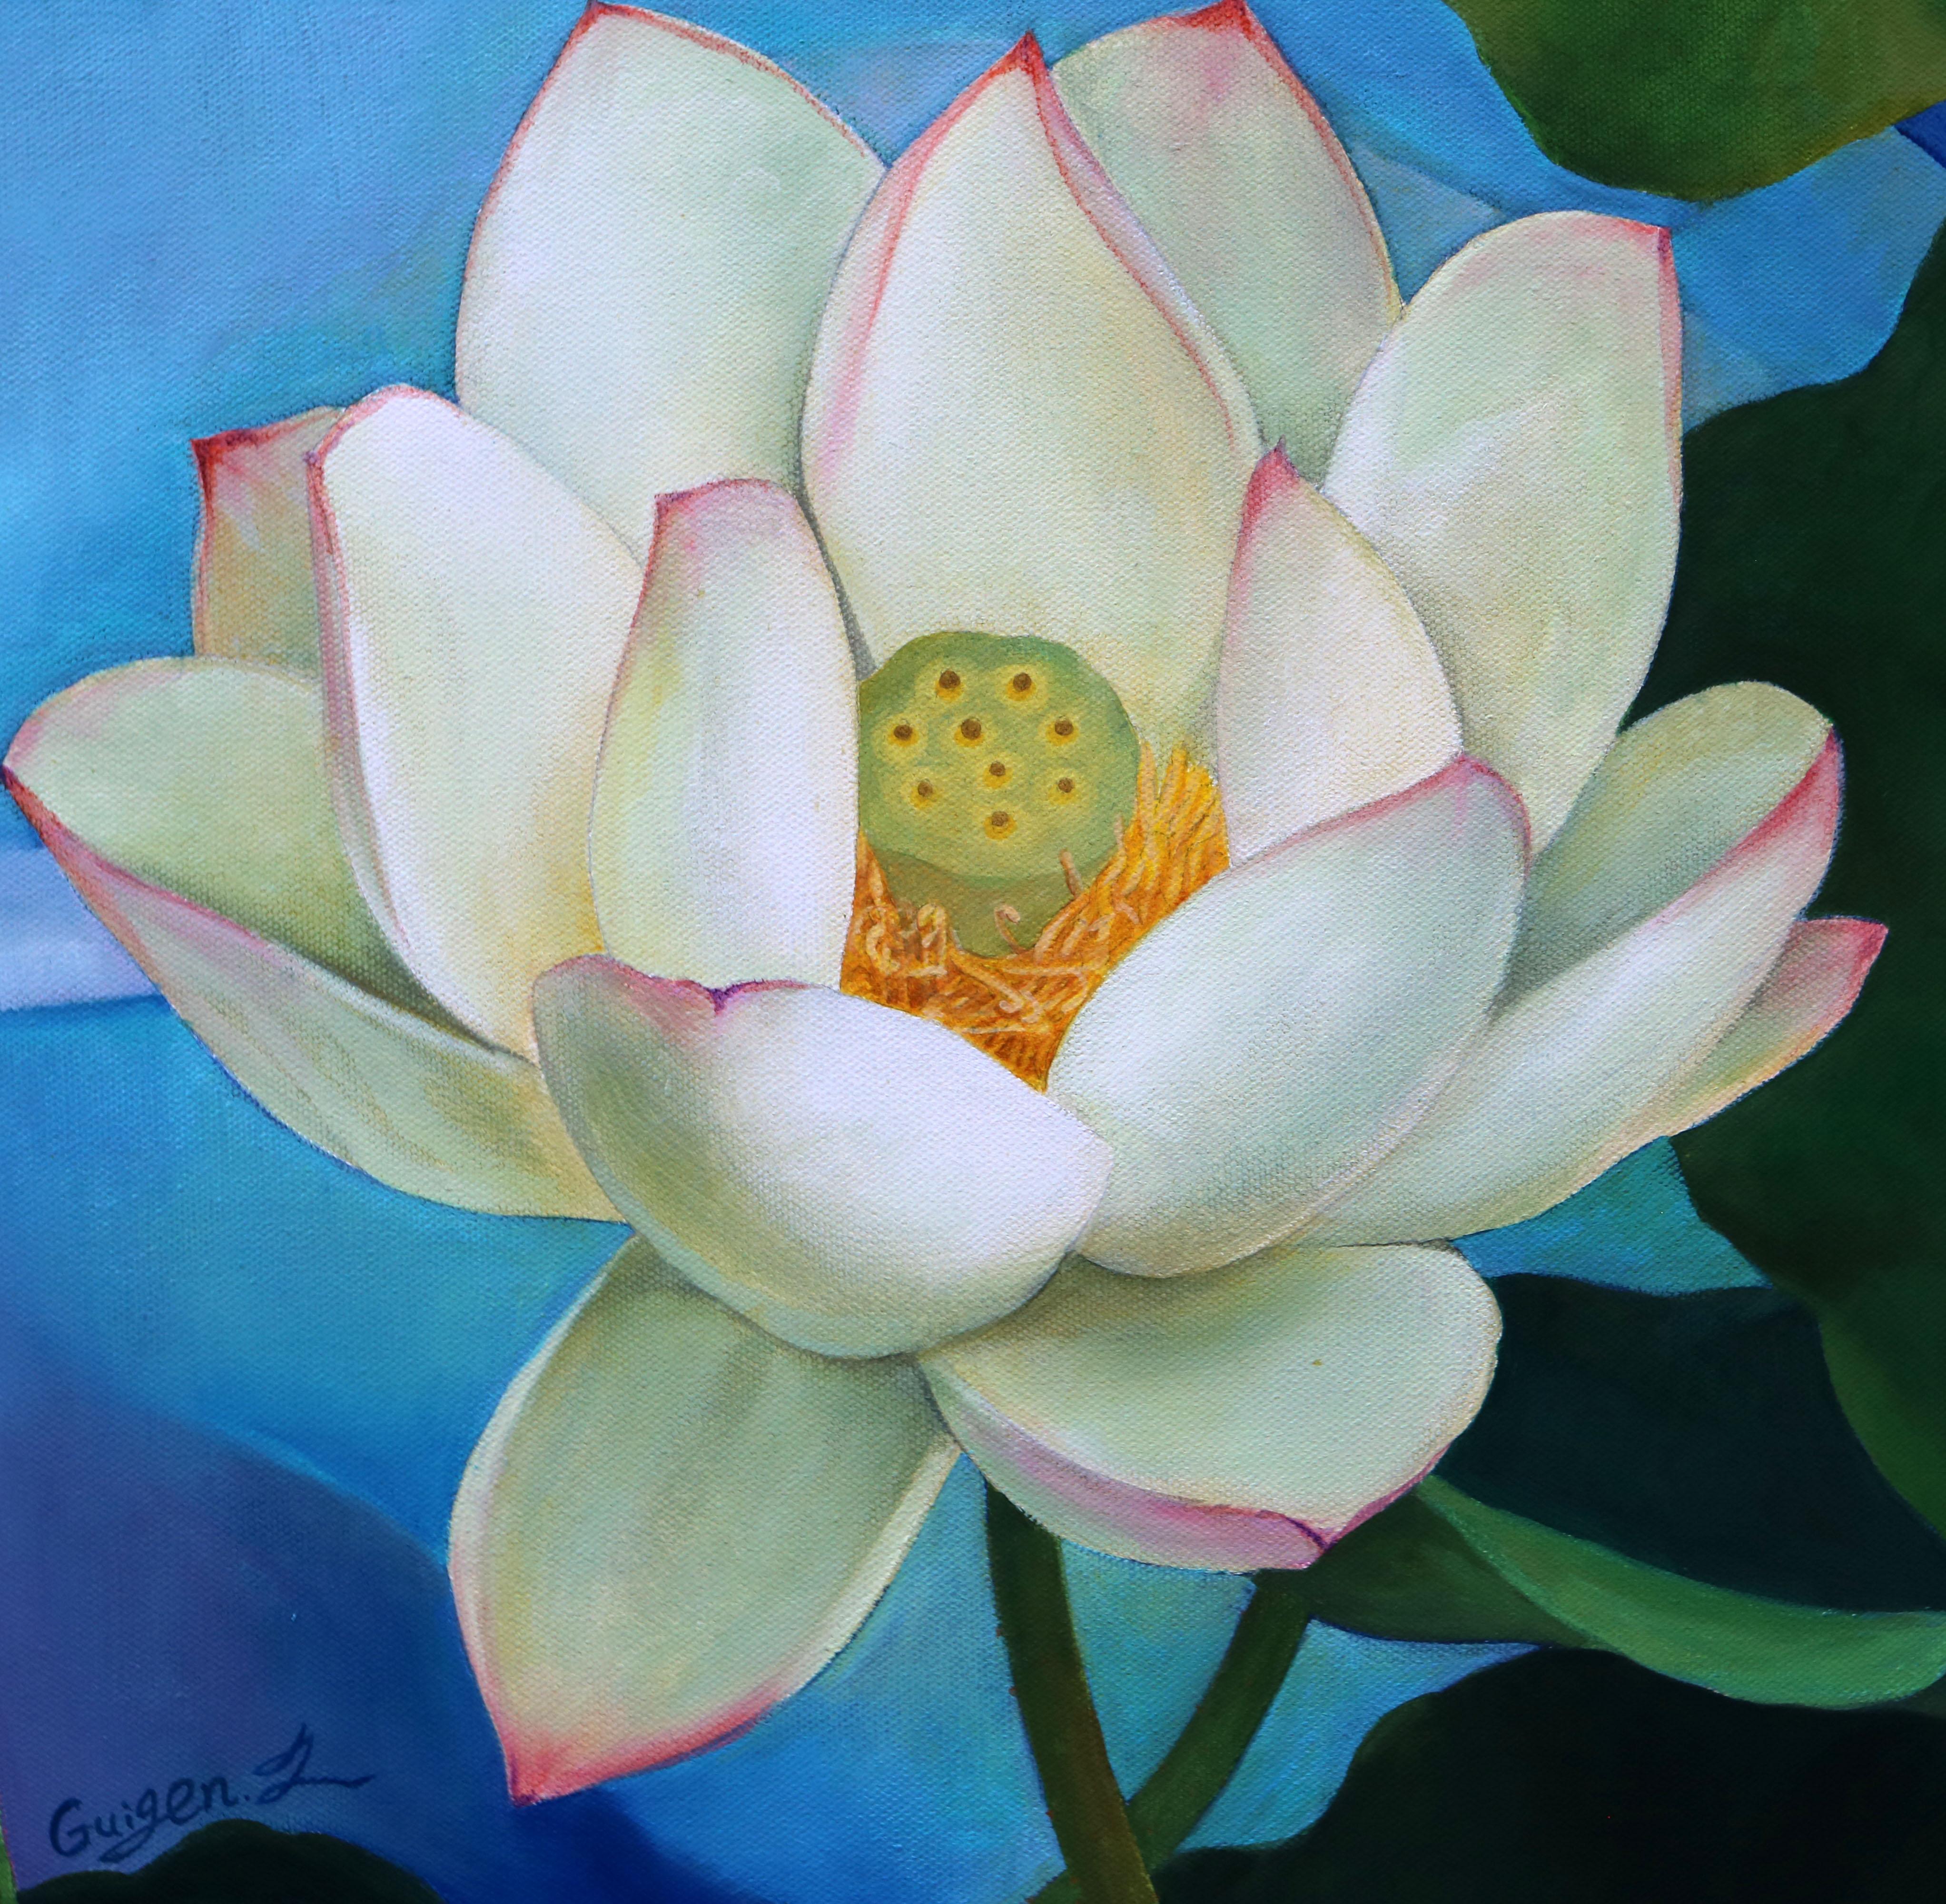 <p>Commentaires de l'artiste<br>L'artiste Guigen Zha présente un lotus blanc exquis avec une netteté et des détails réalistes. La fleur s'épanouit avec des pétales blancs veloutés et des pointes rose tendre. Les feuilles à longues tiges reflètent sa